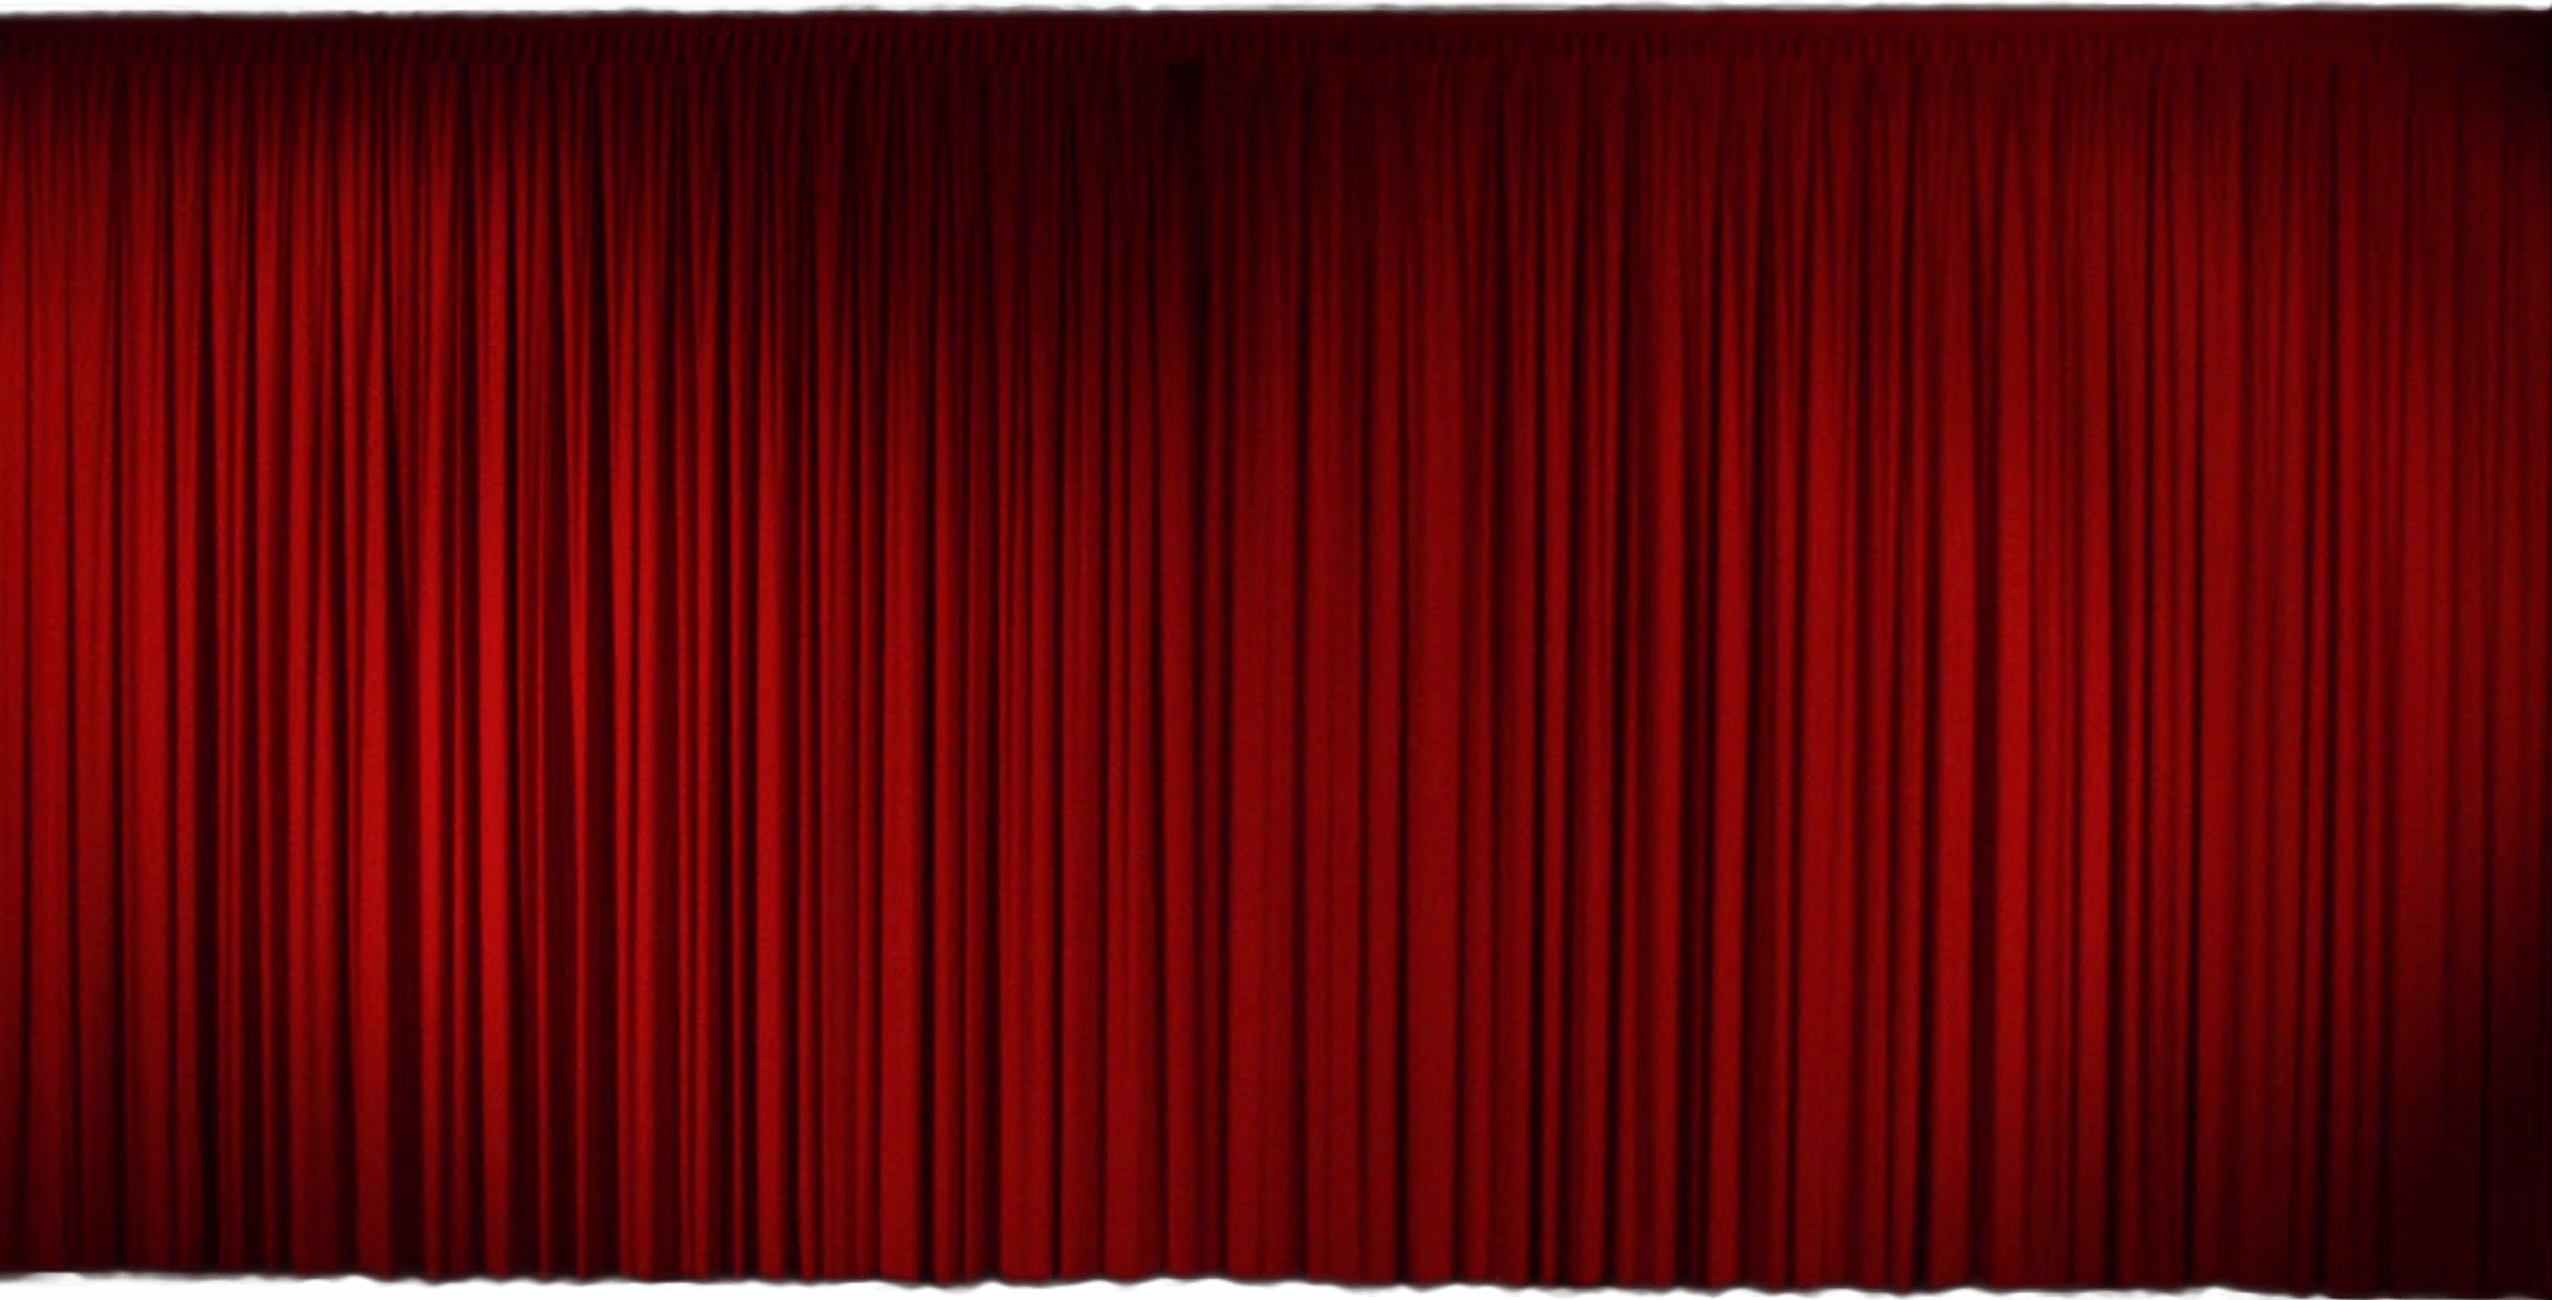 映画館のカーテンの画像